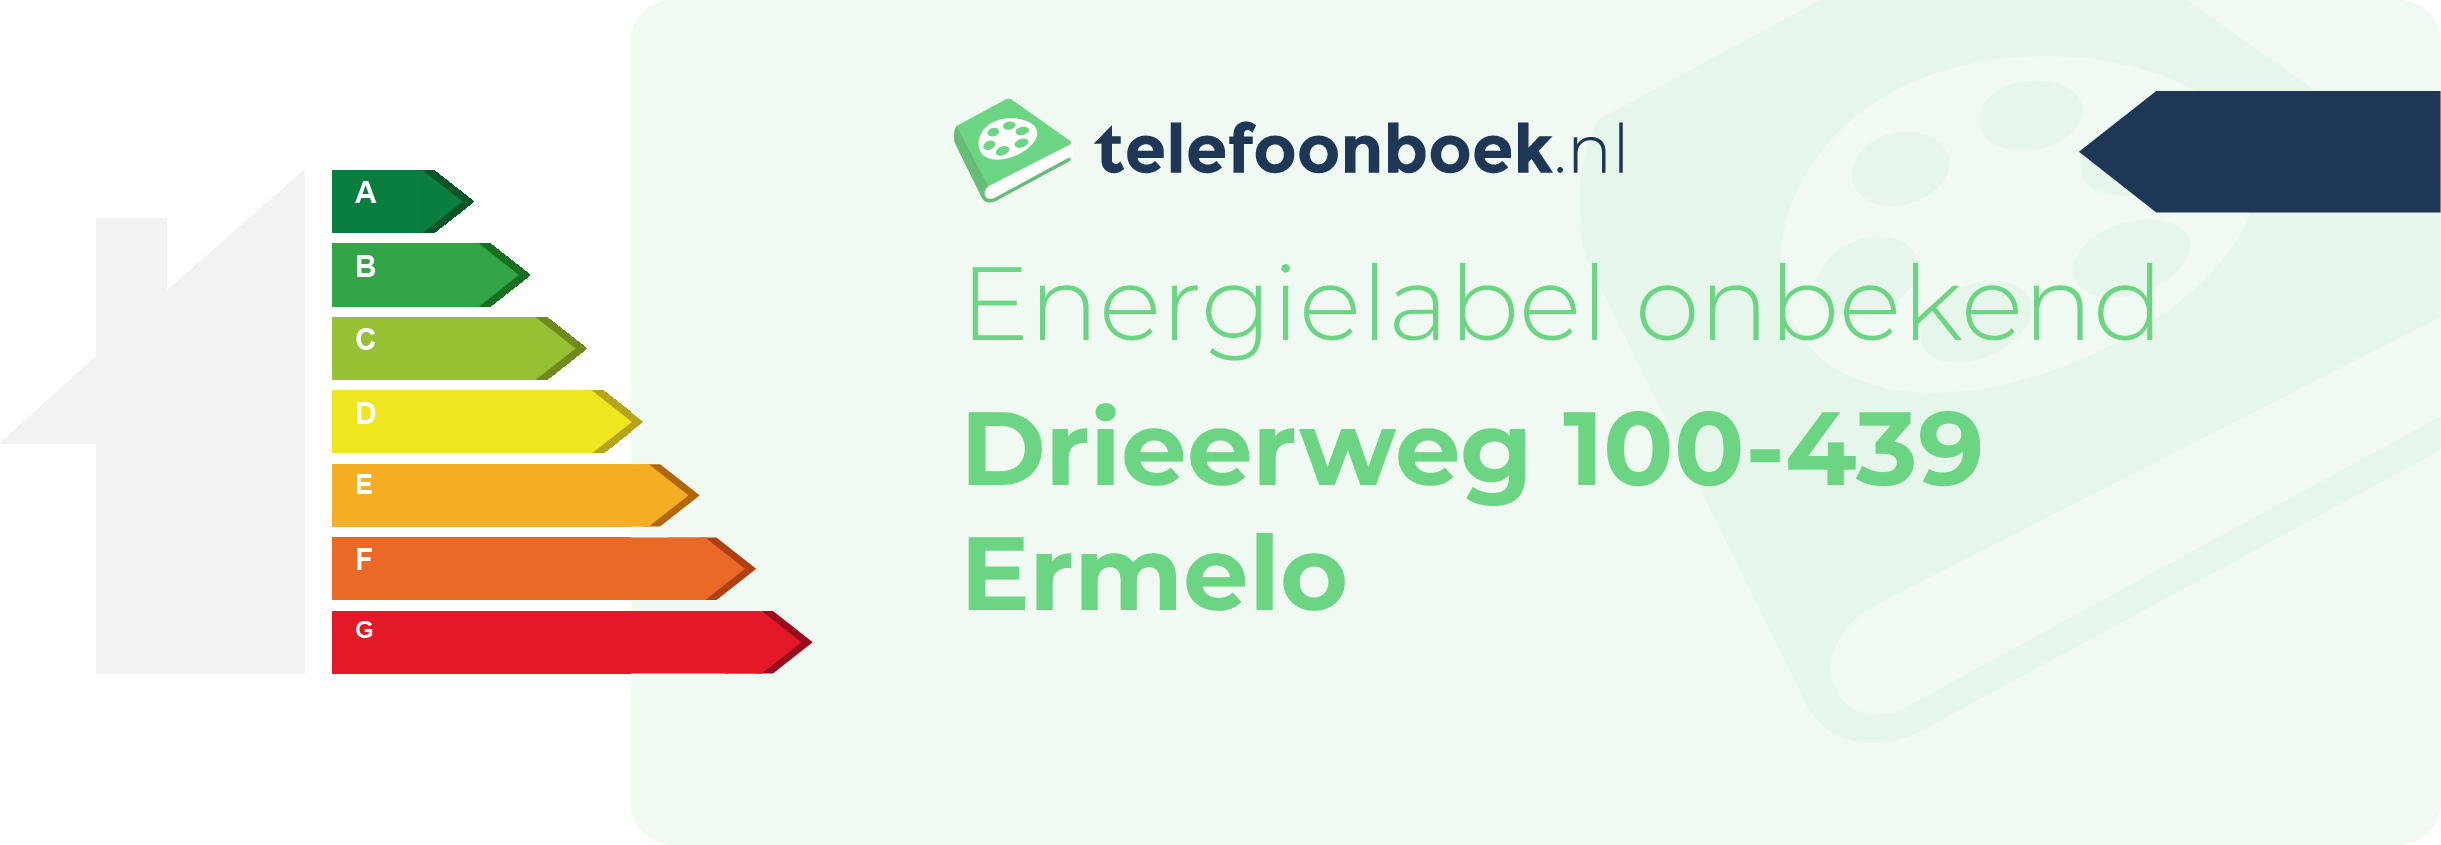 Energielabel Drieerweg 100-439 Ermelo